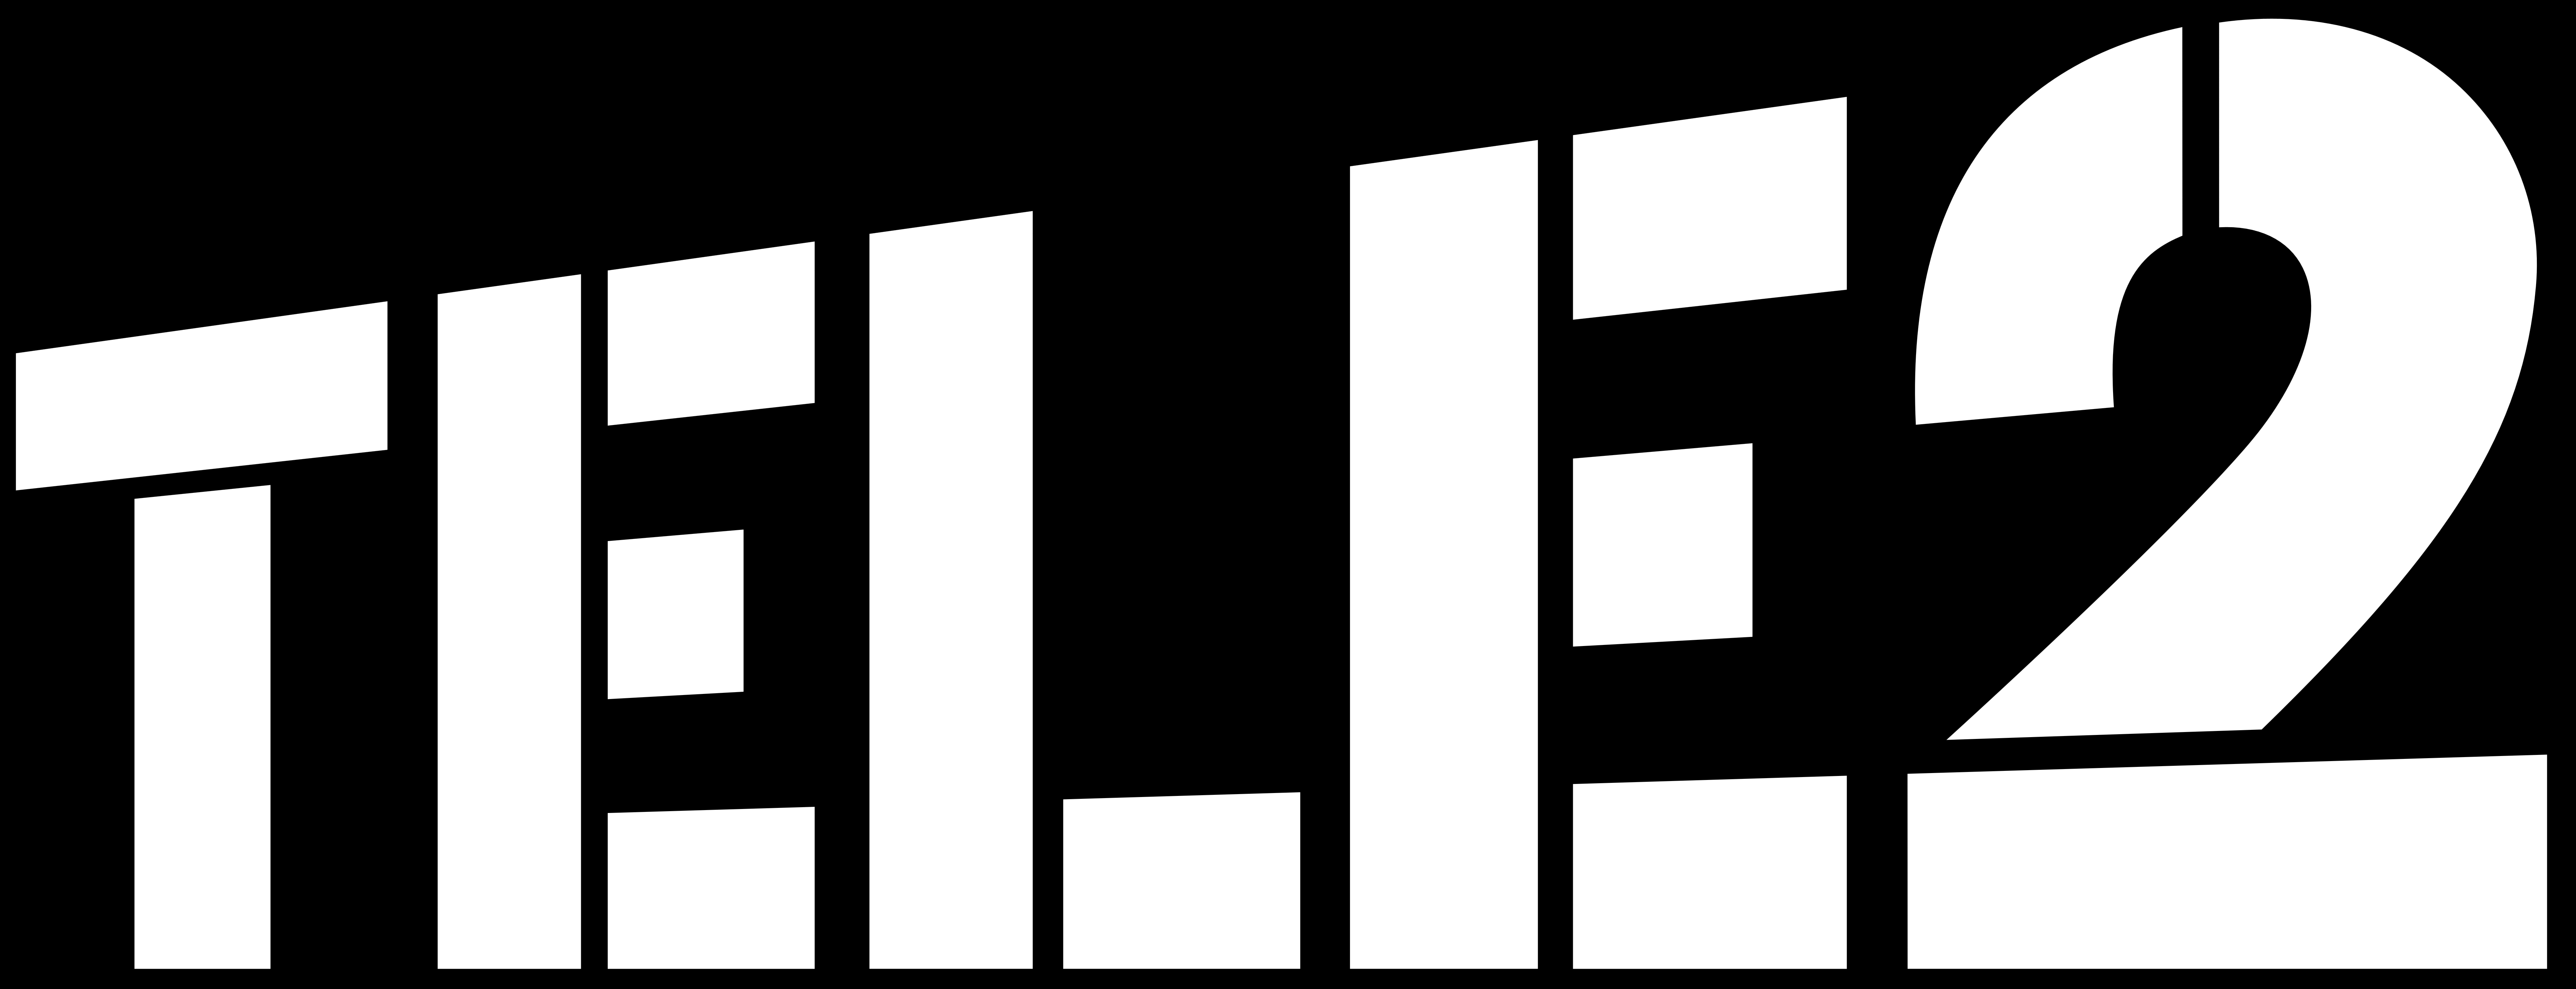 Tele2 Logo - Tele2 – Logos Download